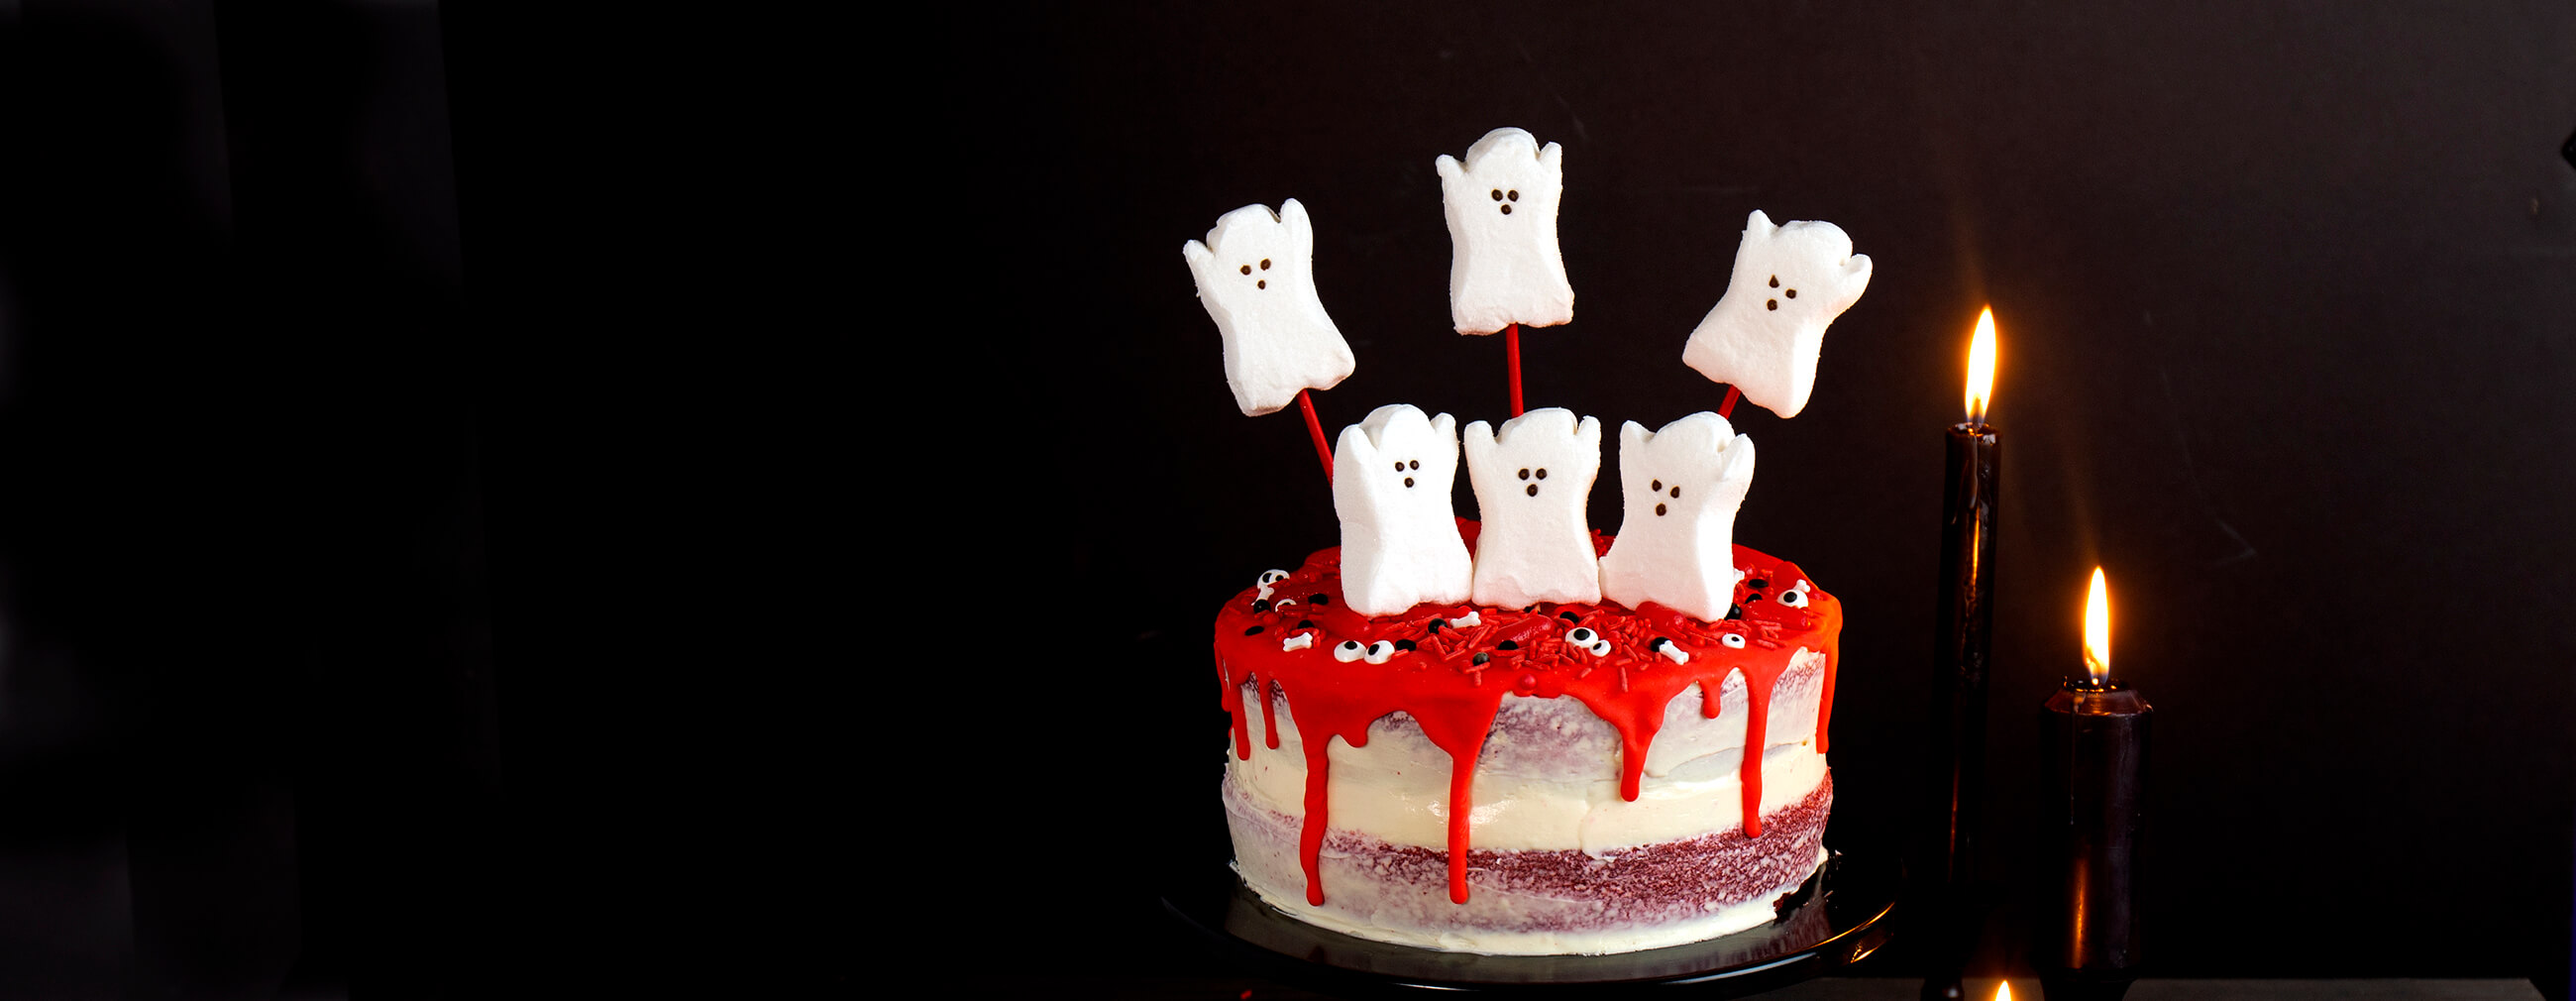 PEEPS® Halloween Red Velvet Layer Cake